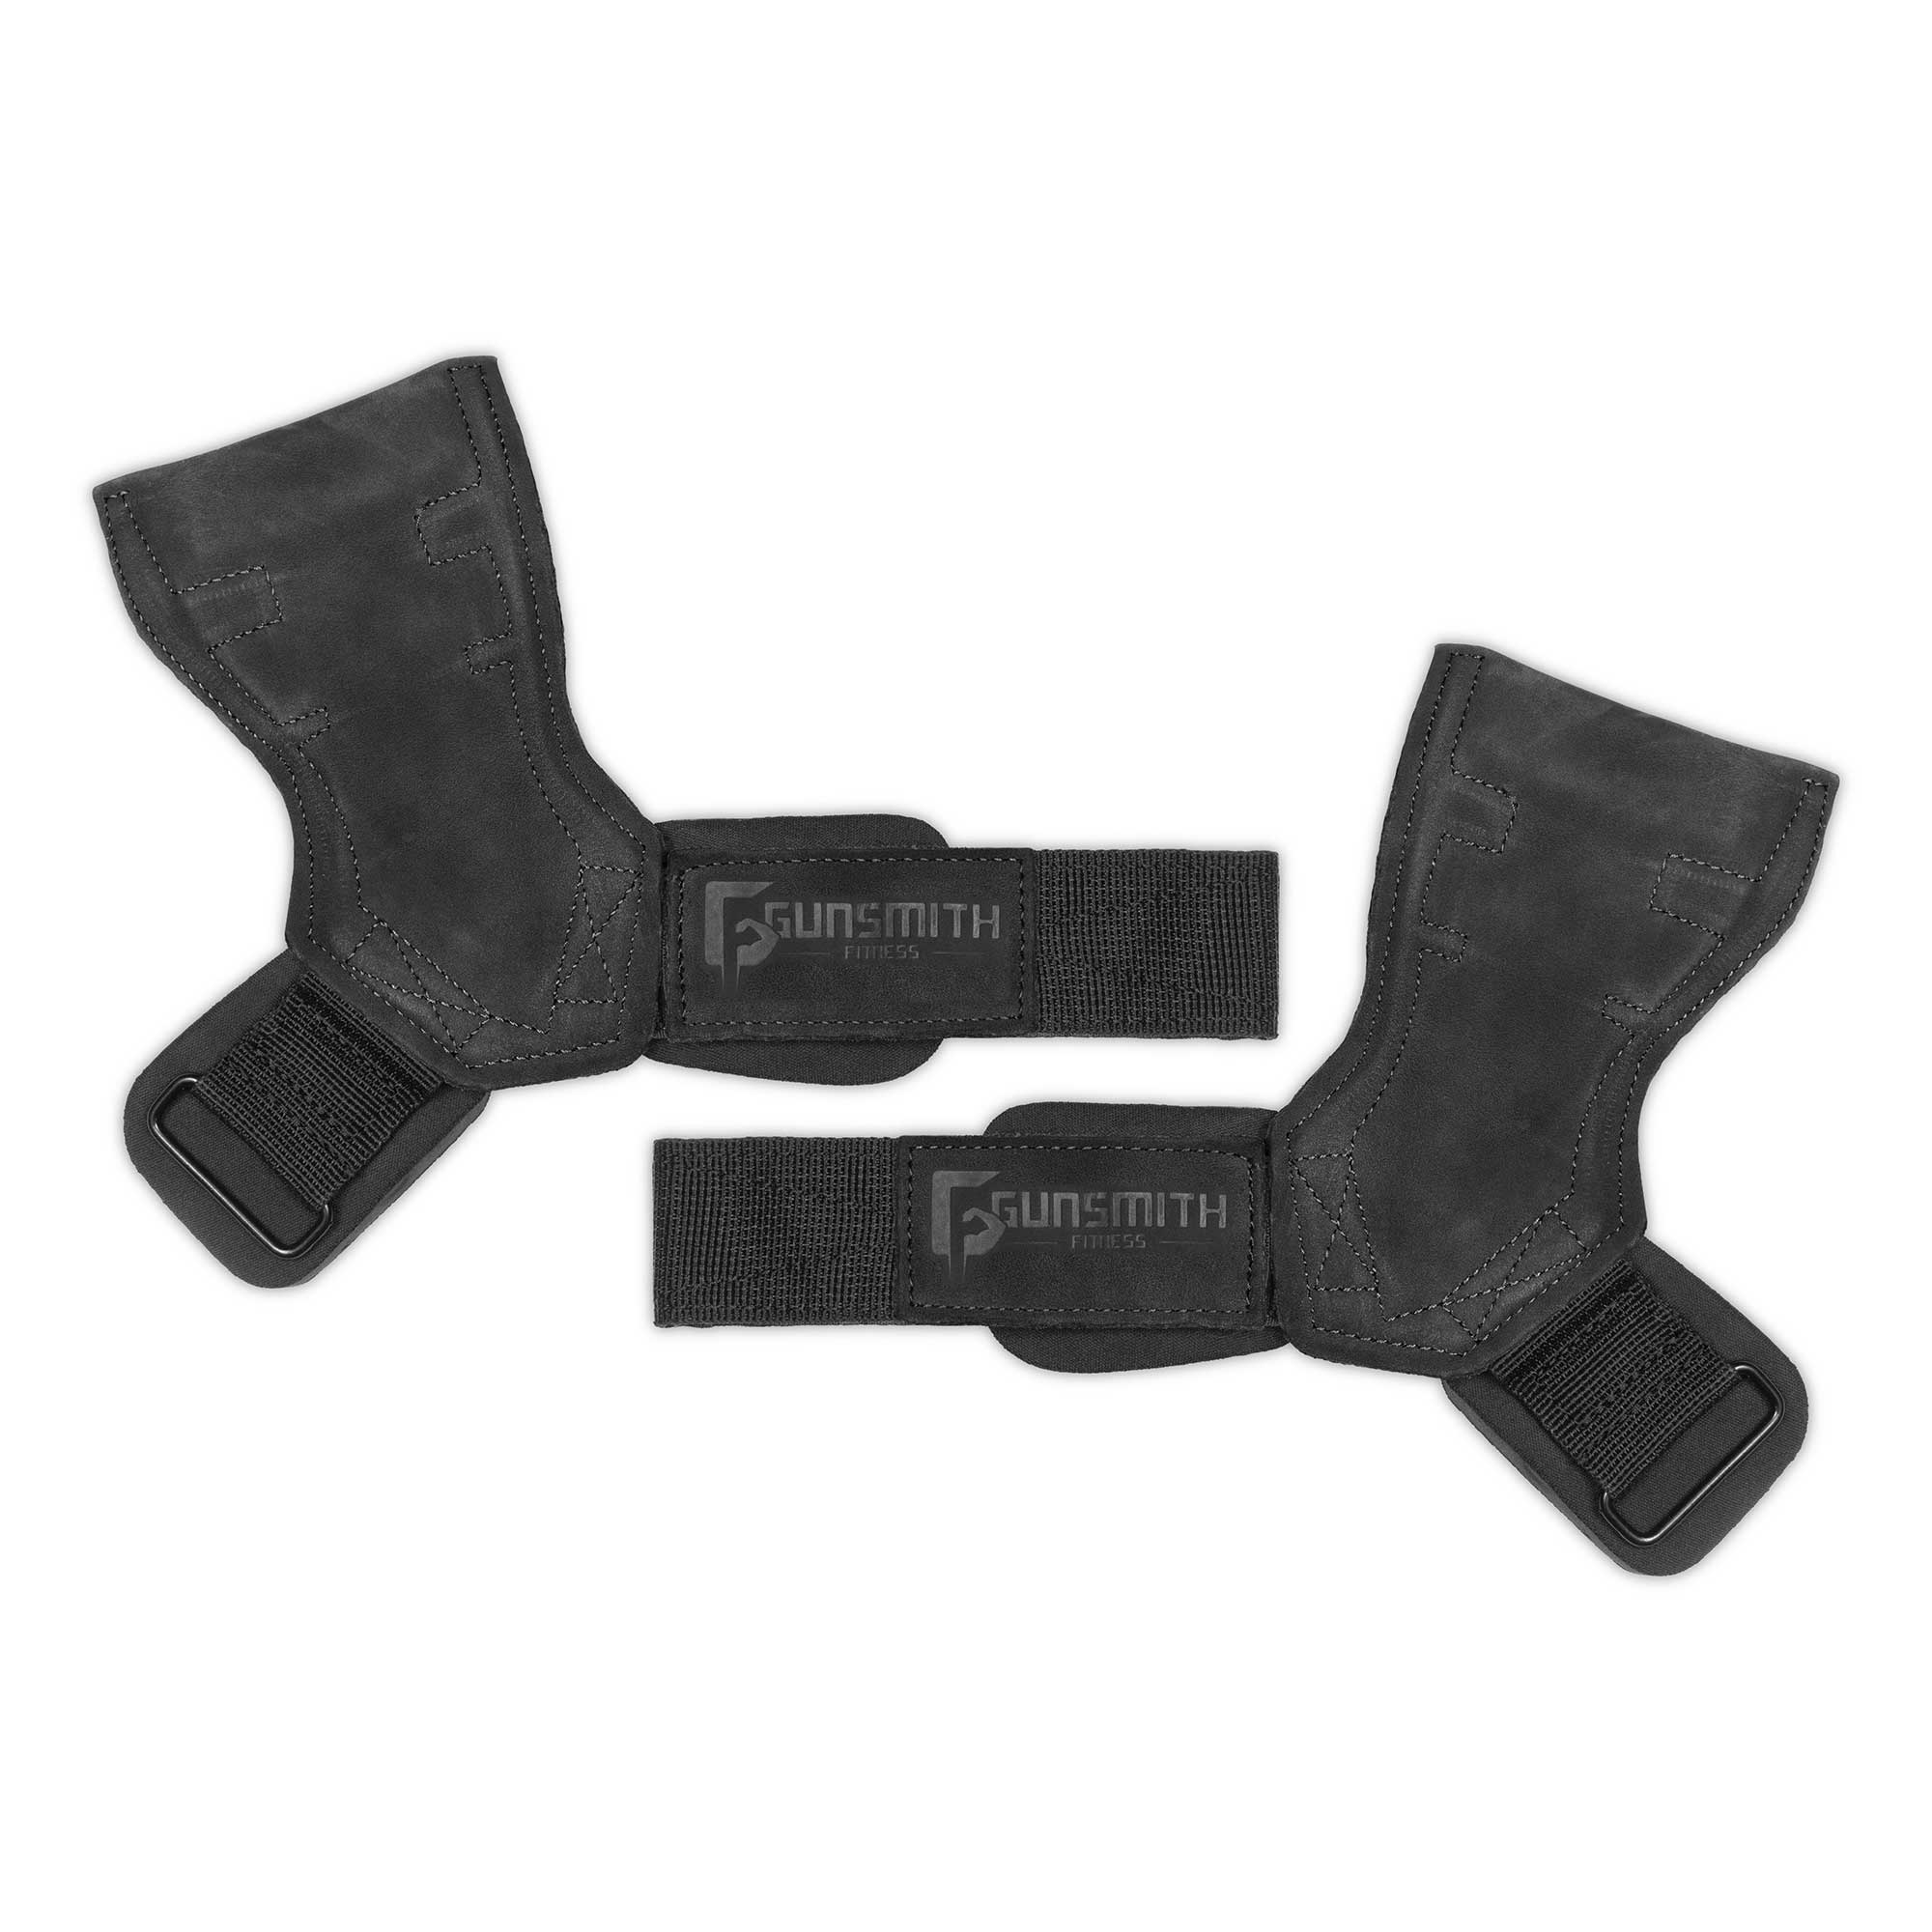 Power Grips - Gunsmith Fitness